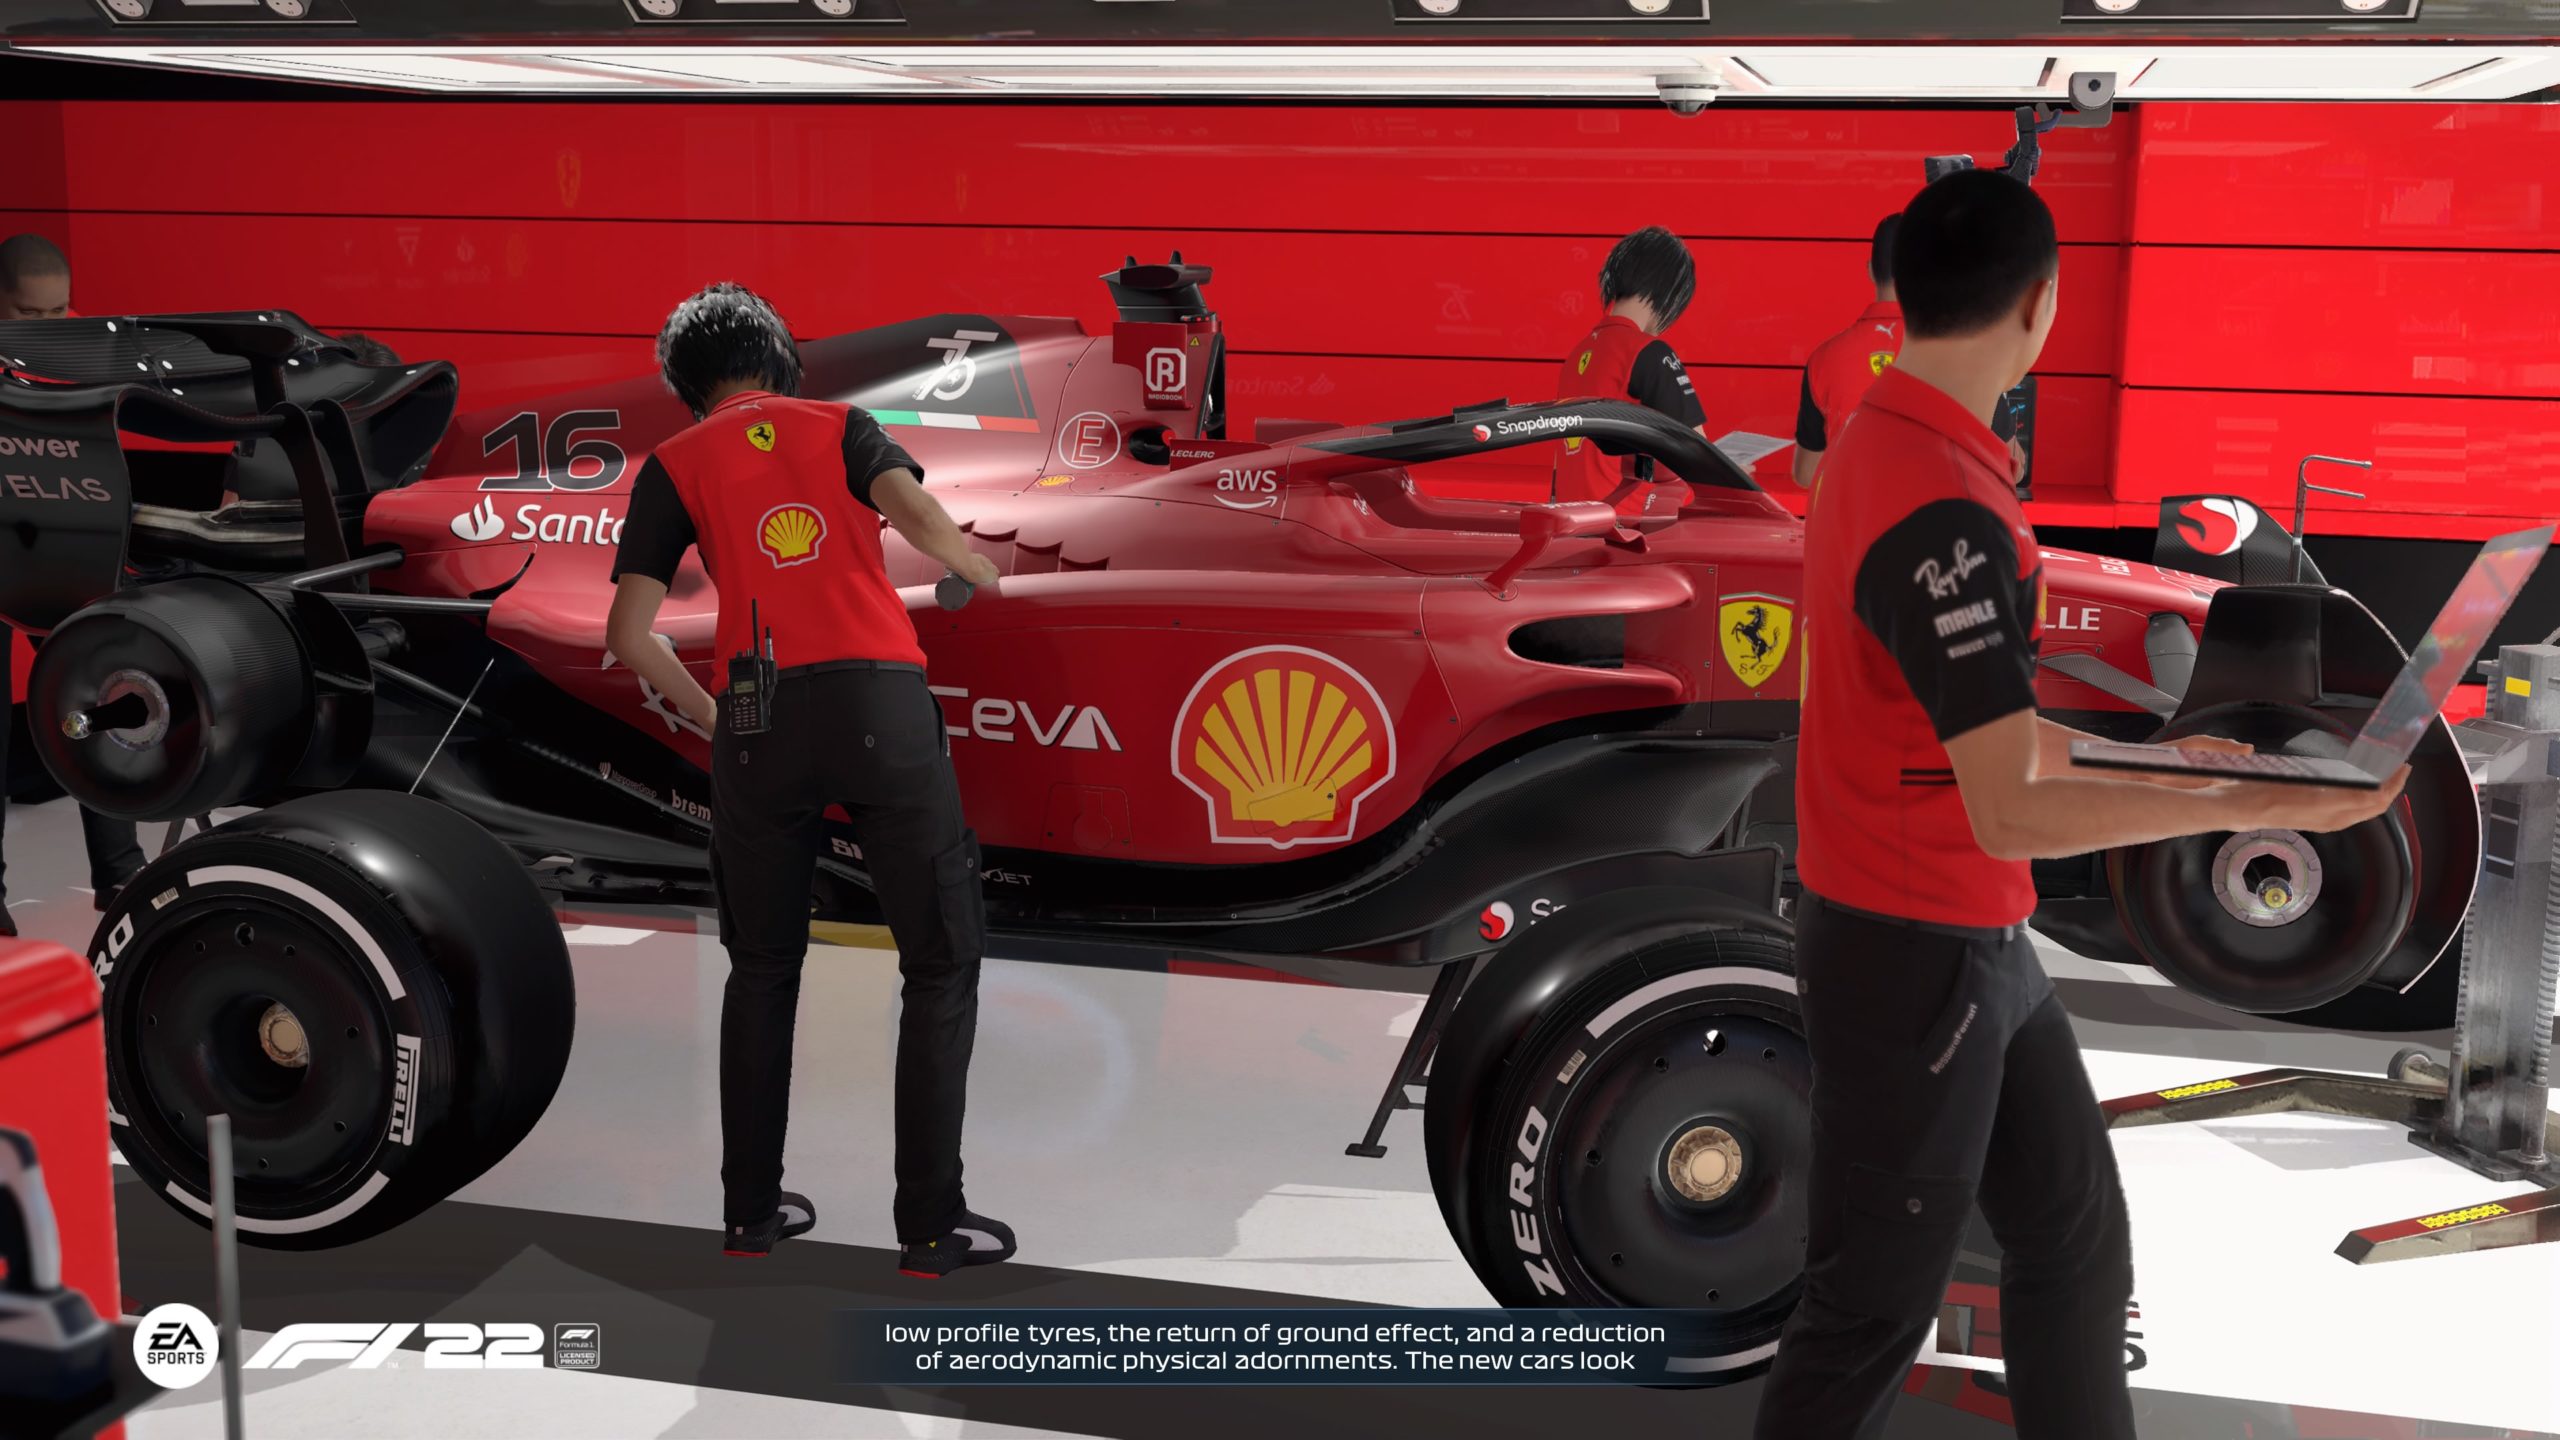 Inside the Ferrari's pit station